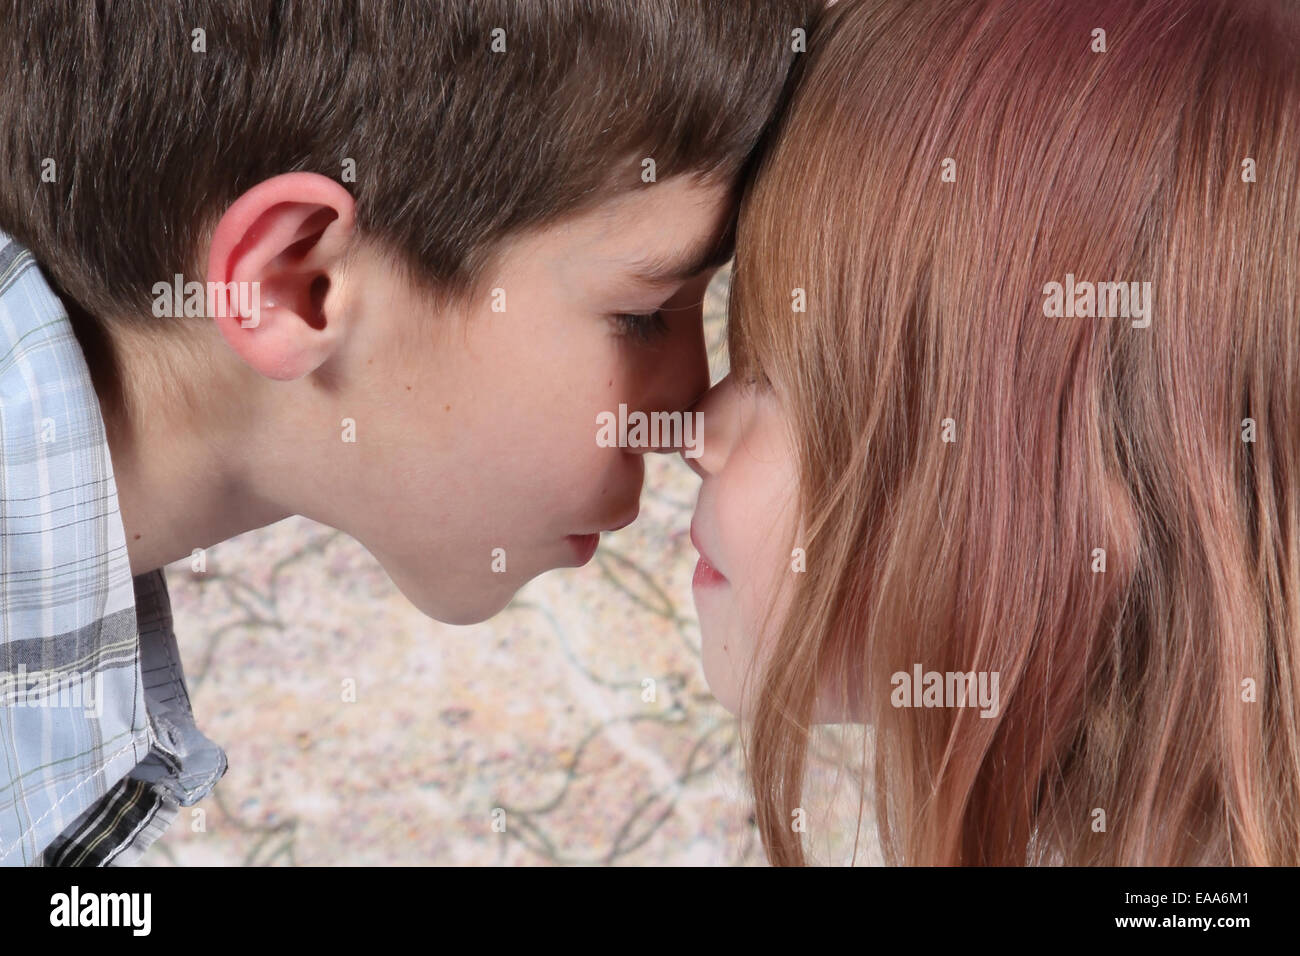 18 где мальчик с мальчиком. Поцелуй мальчика и девочки. Мальчик целует девочку. Поцелуй мальчика и девочки 10 лет.